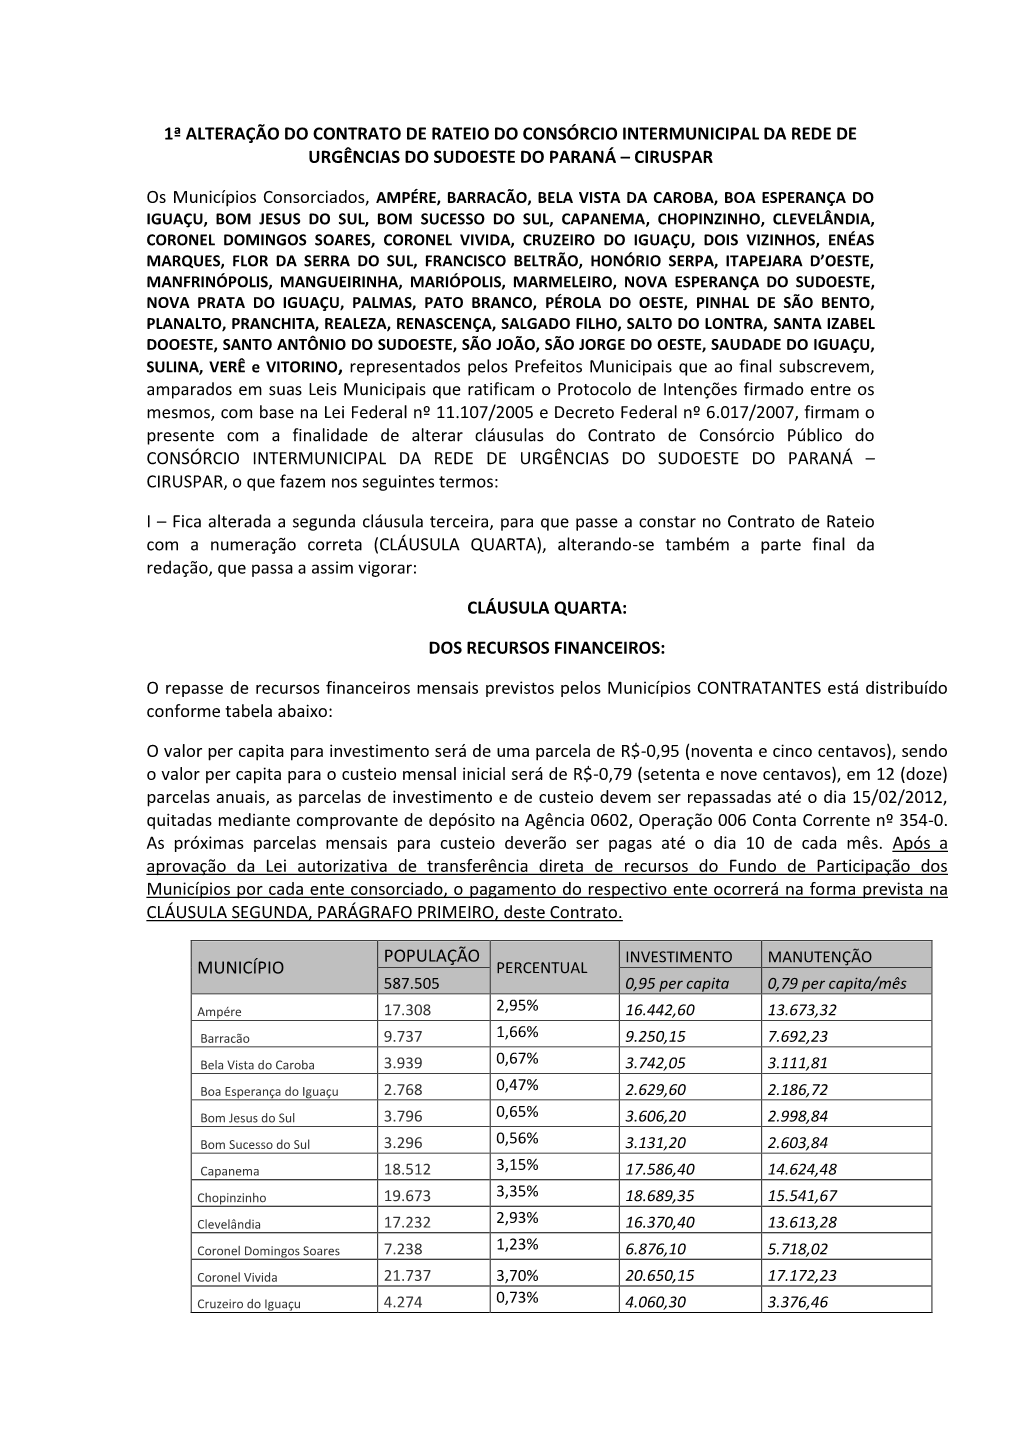 Contrato De Rateio Do Consórcio Intermunicipal Da Rede De Urgências Do Sudoeste Do Paraná – Ciruspar